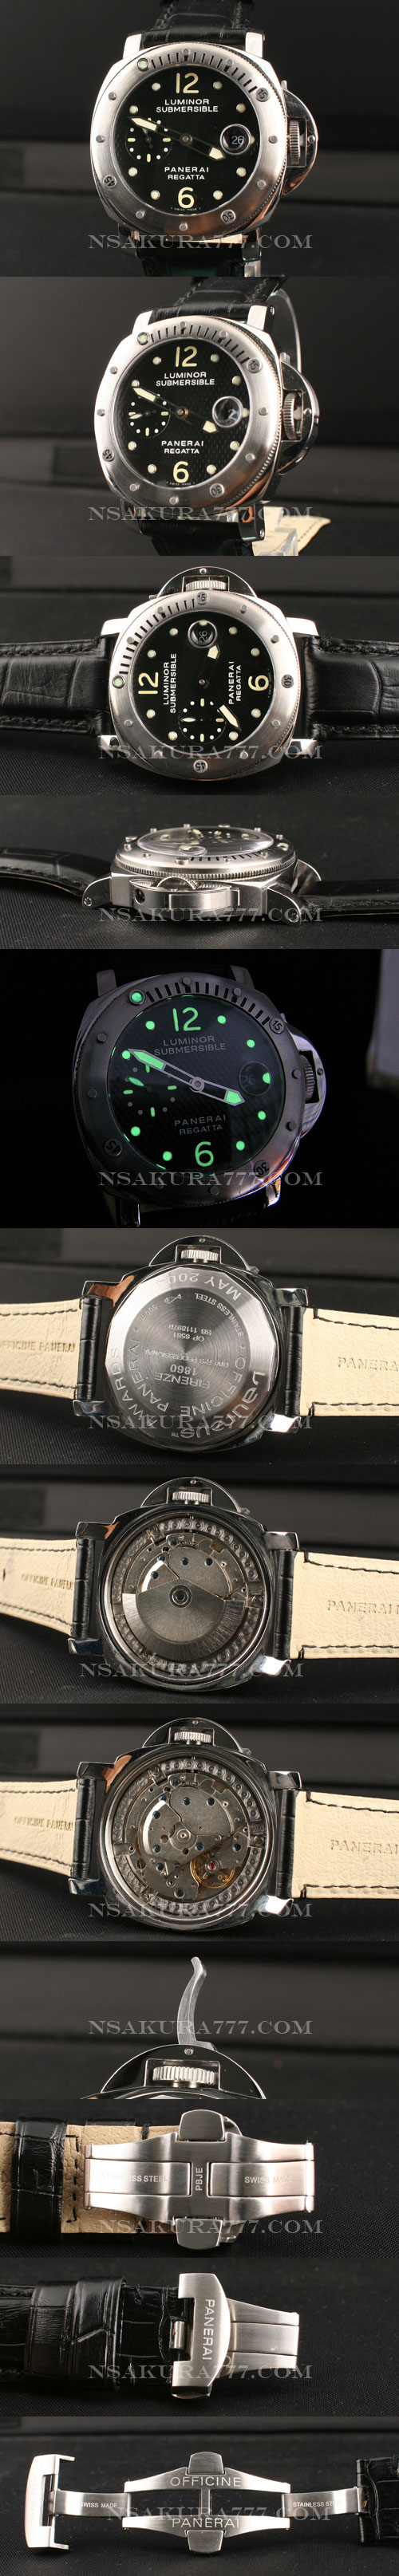 スーパーコピー時計パネライ レガッタ2004自動巻廉価版7750 - ウインドウを閉じる